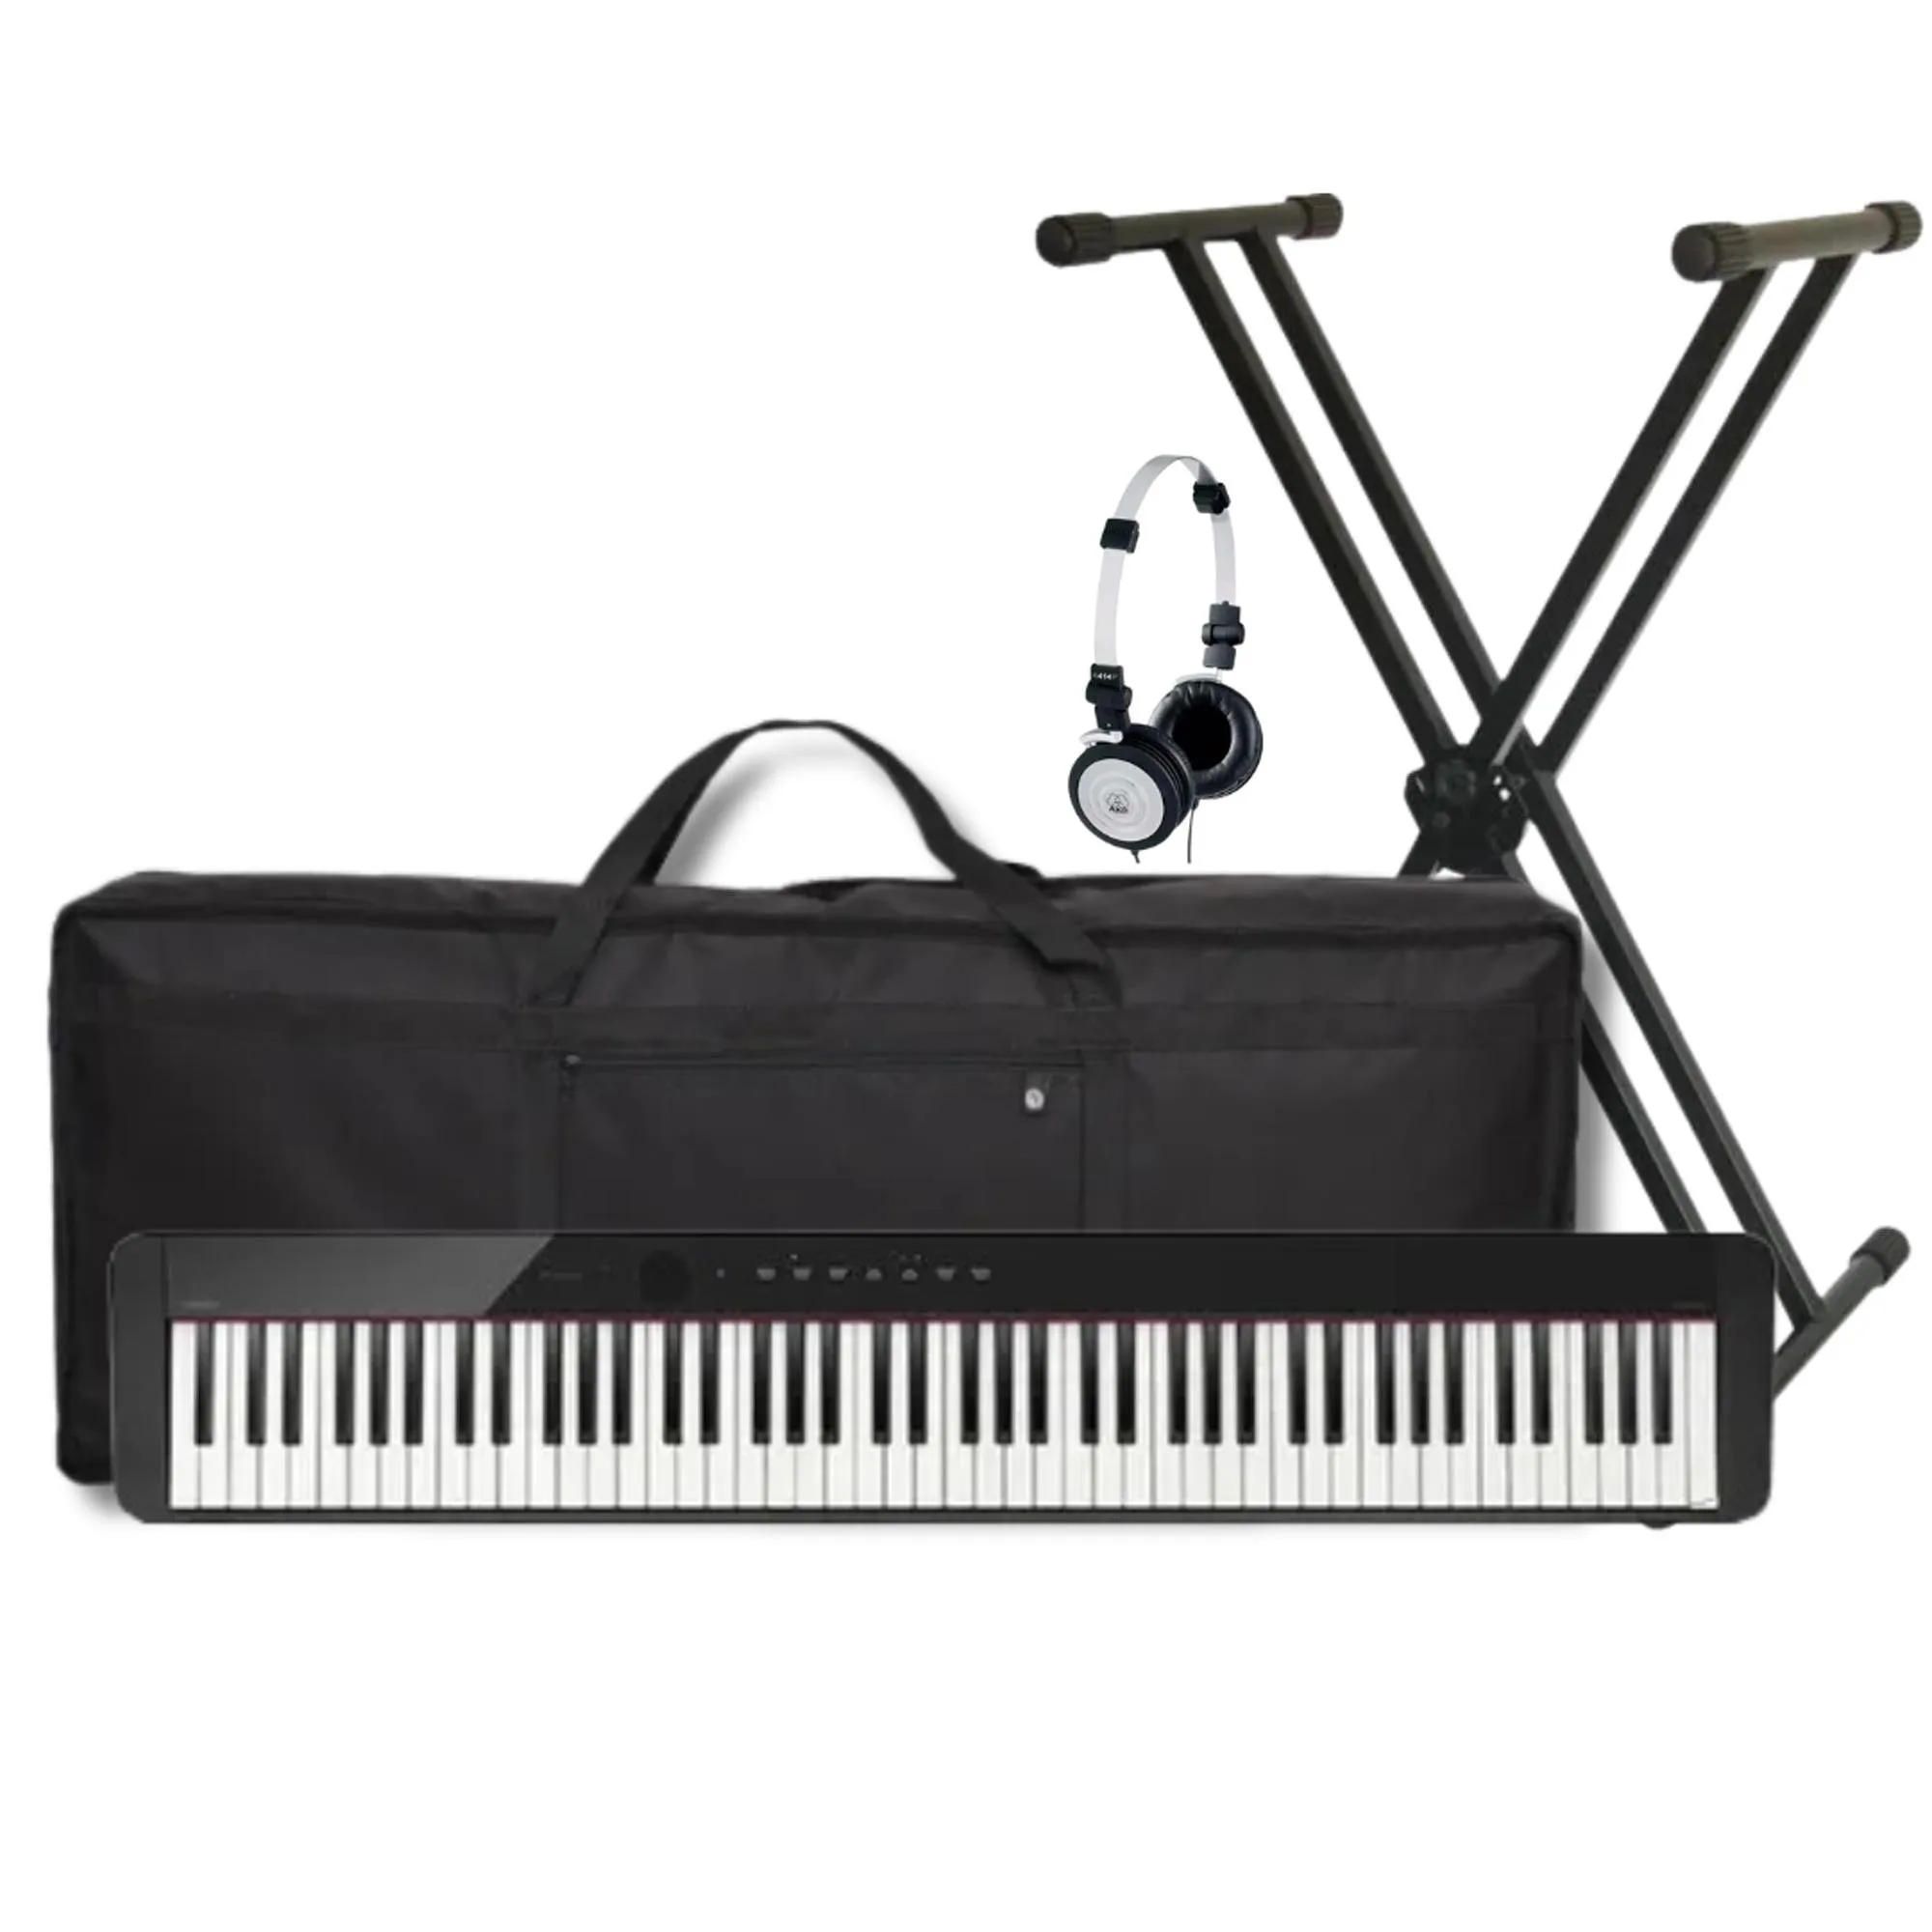 Kit Piano Digital Casio PX-S1000 PT+ Suporte + Acessórios por 4.615,90 à vista no boleto/pix ou parcele em até 12x sem juros. Compre na loja Mundomax!